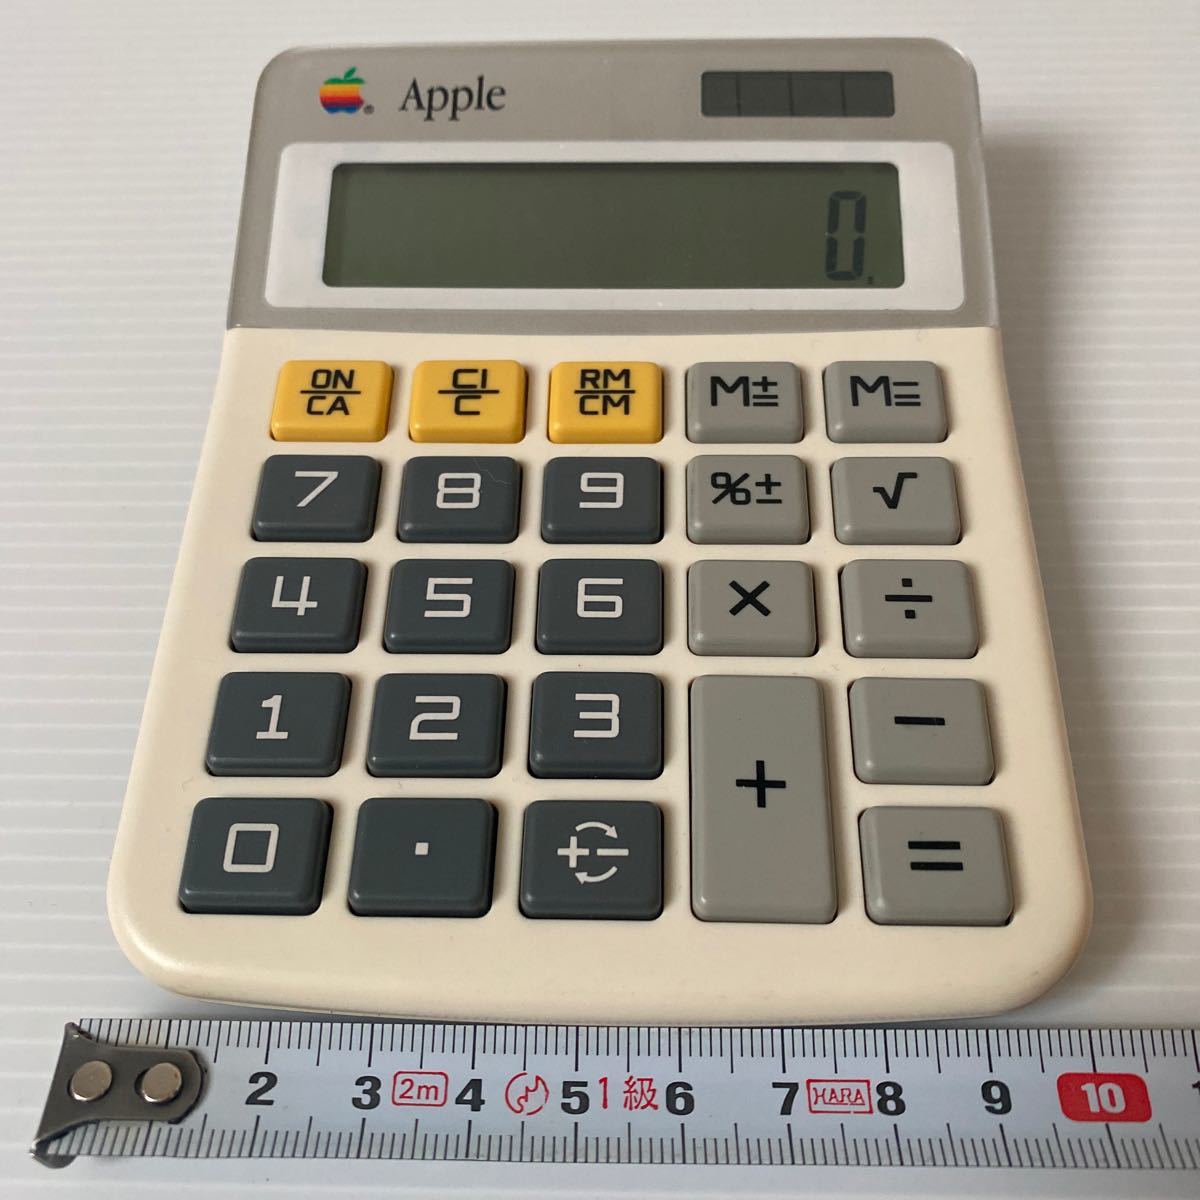 Apple canon LS-100H 计算机アップル 中古 古い物ご理解顶ける方 13×10×厚み約2cm 剧レア アップル计算机 コレクションに